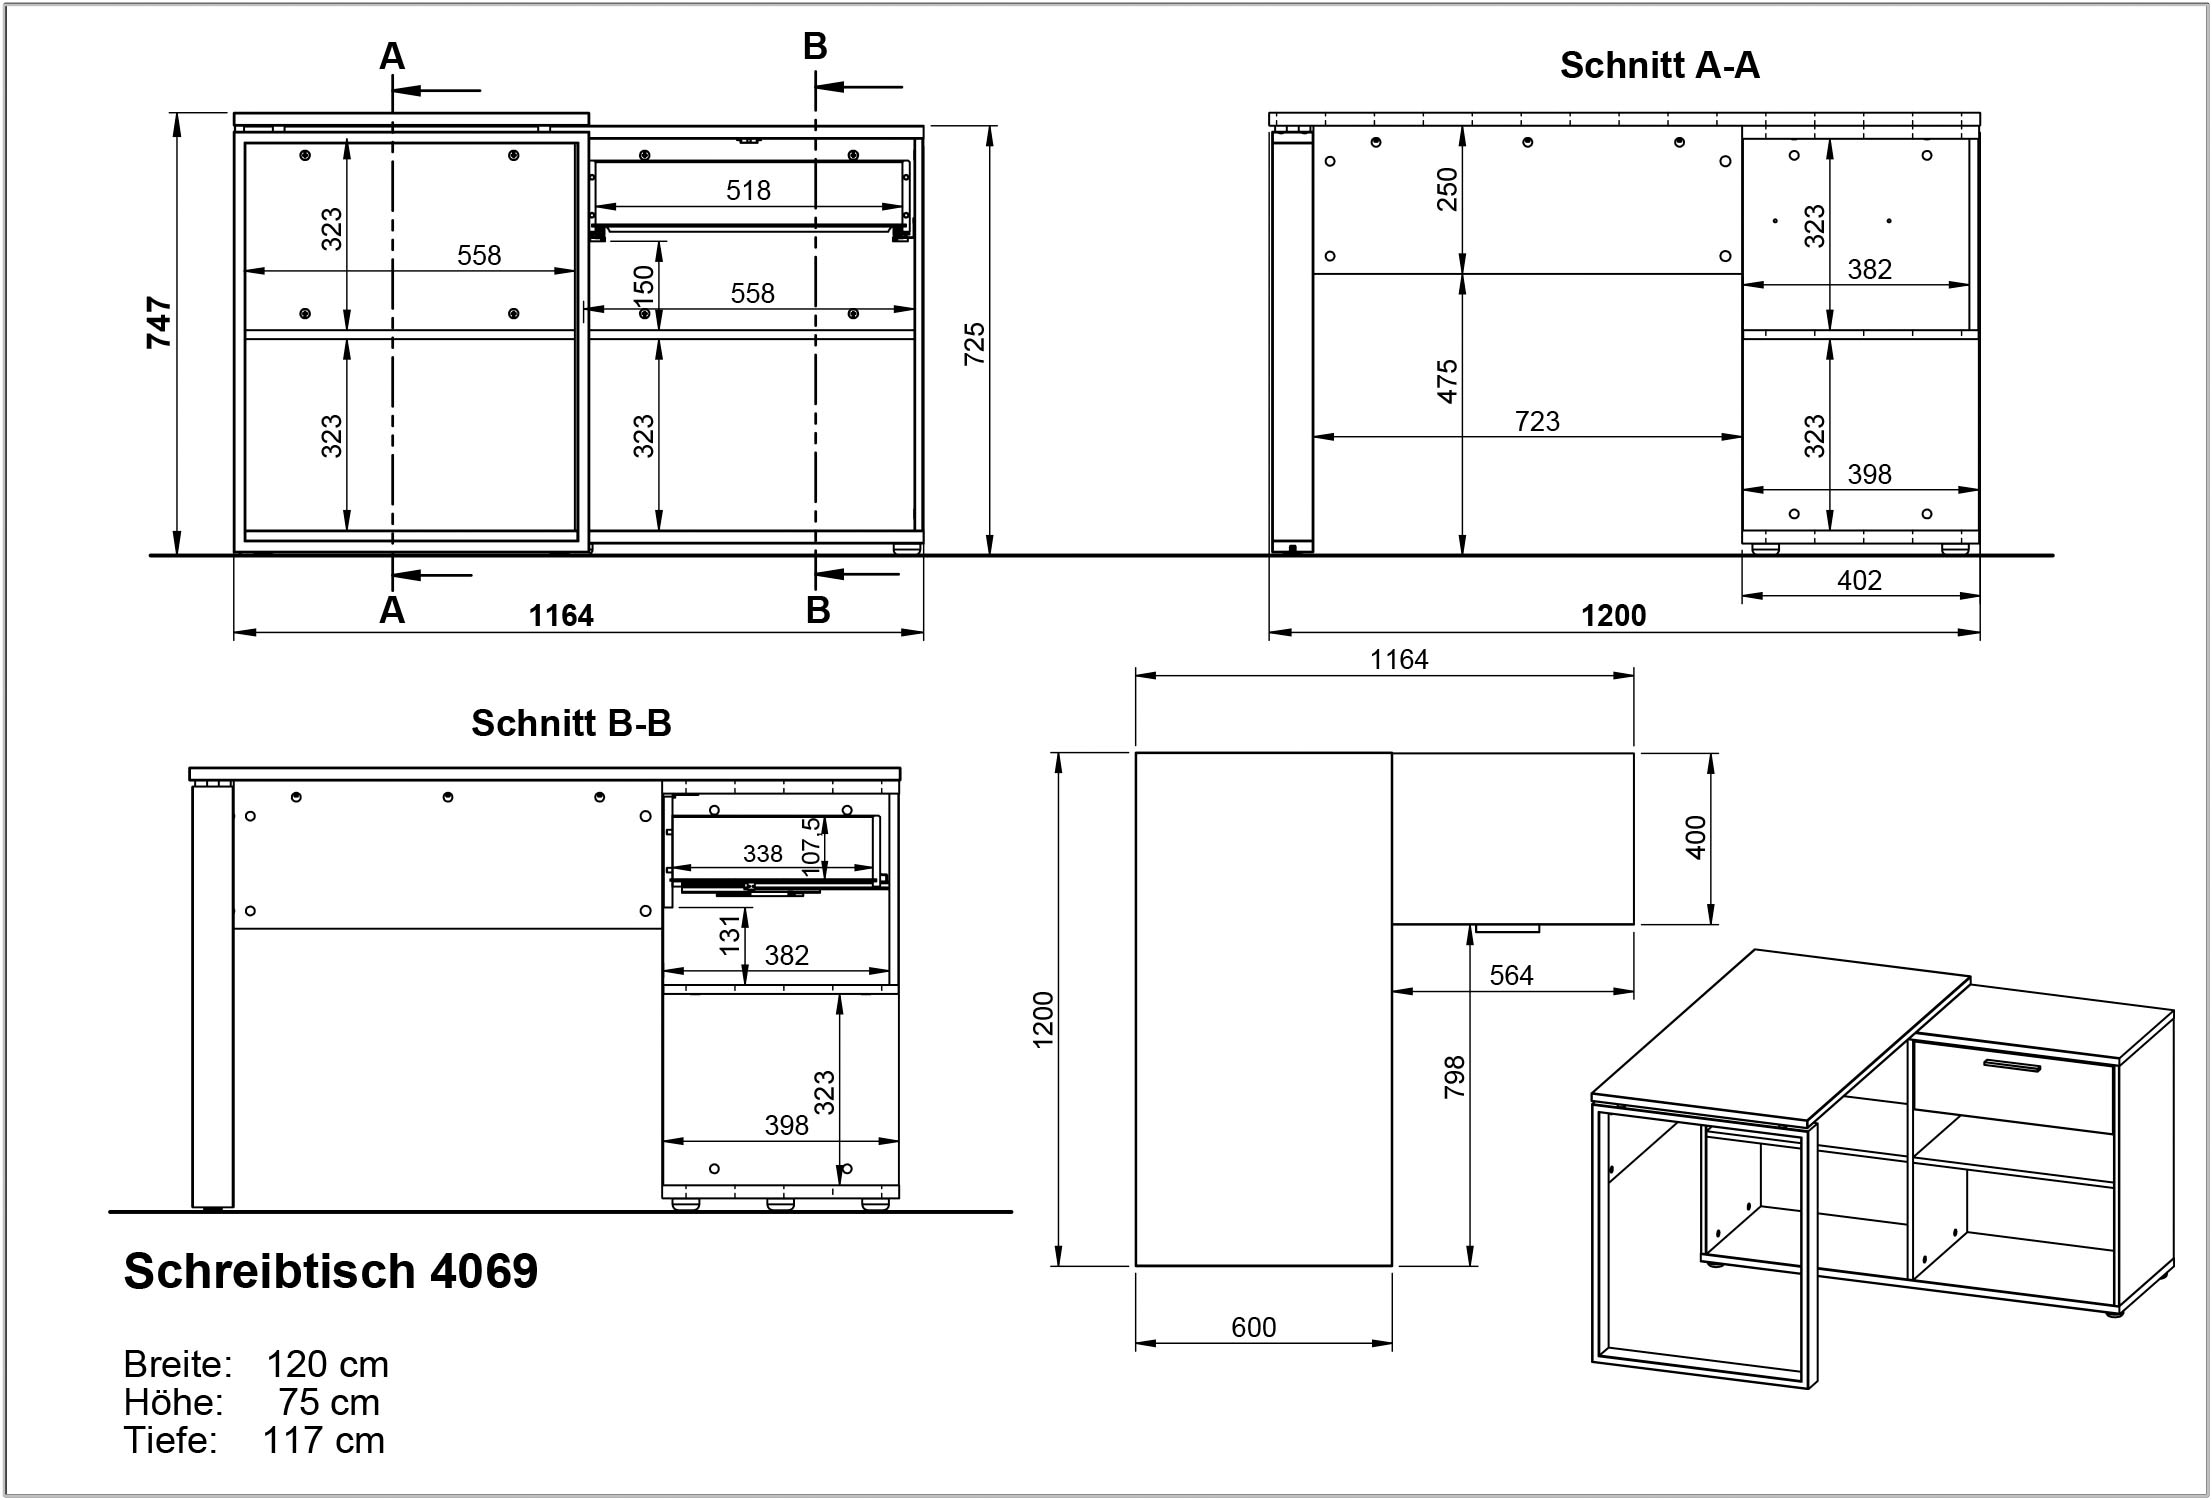 GERMANIA Büro-Set »Fenton«, (3 tlg.), inkl. Schreibtisch mit integriertem Sideboard und zwei Aktenschränken